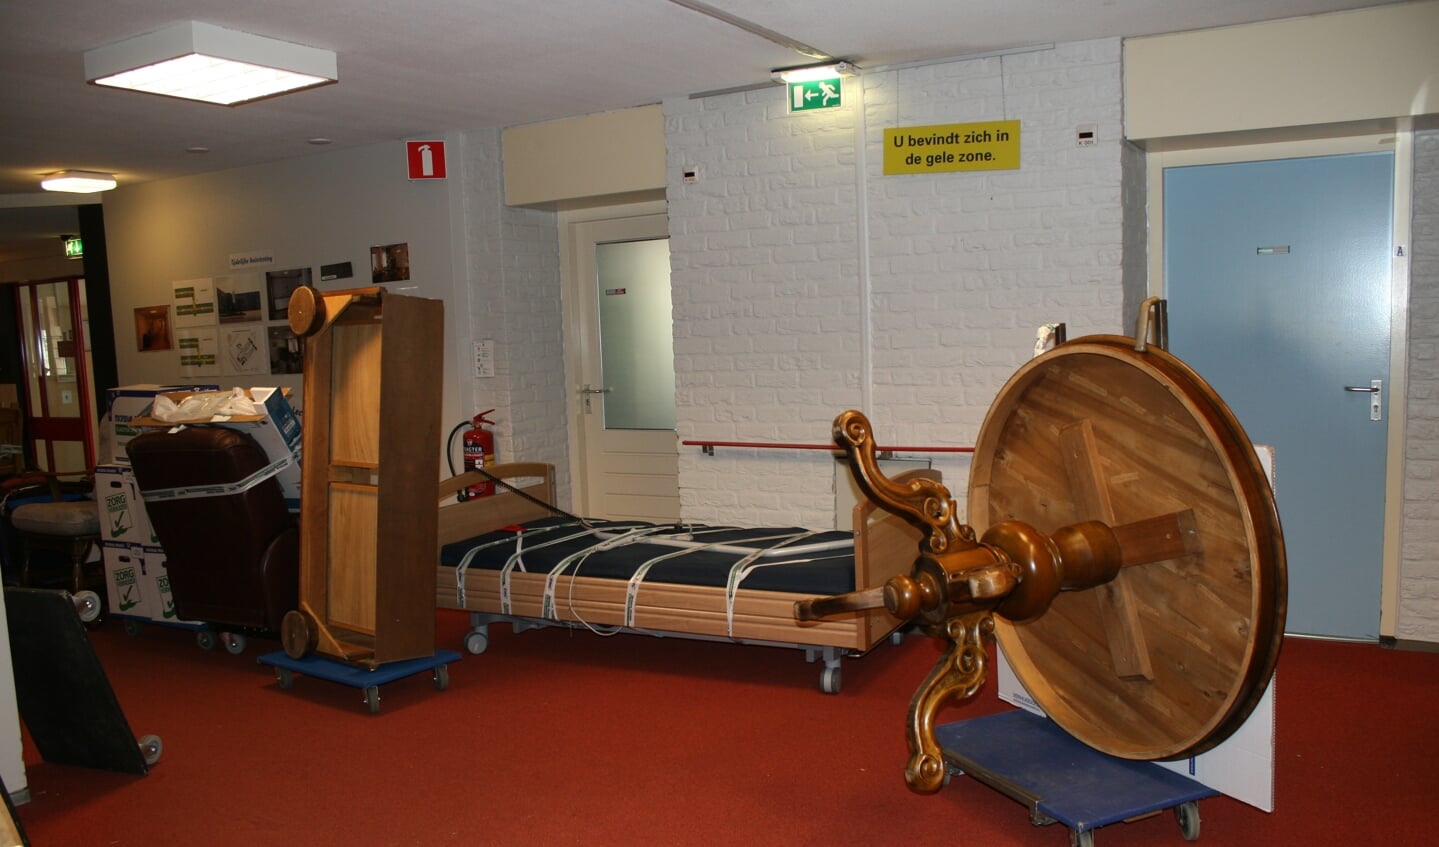 Ook in de gangen staan meubels en andere spullen die mee moeten naar de nieuwe locatie. Foto: Dinès Quist